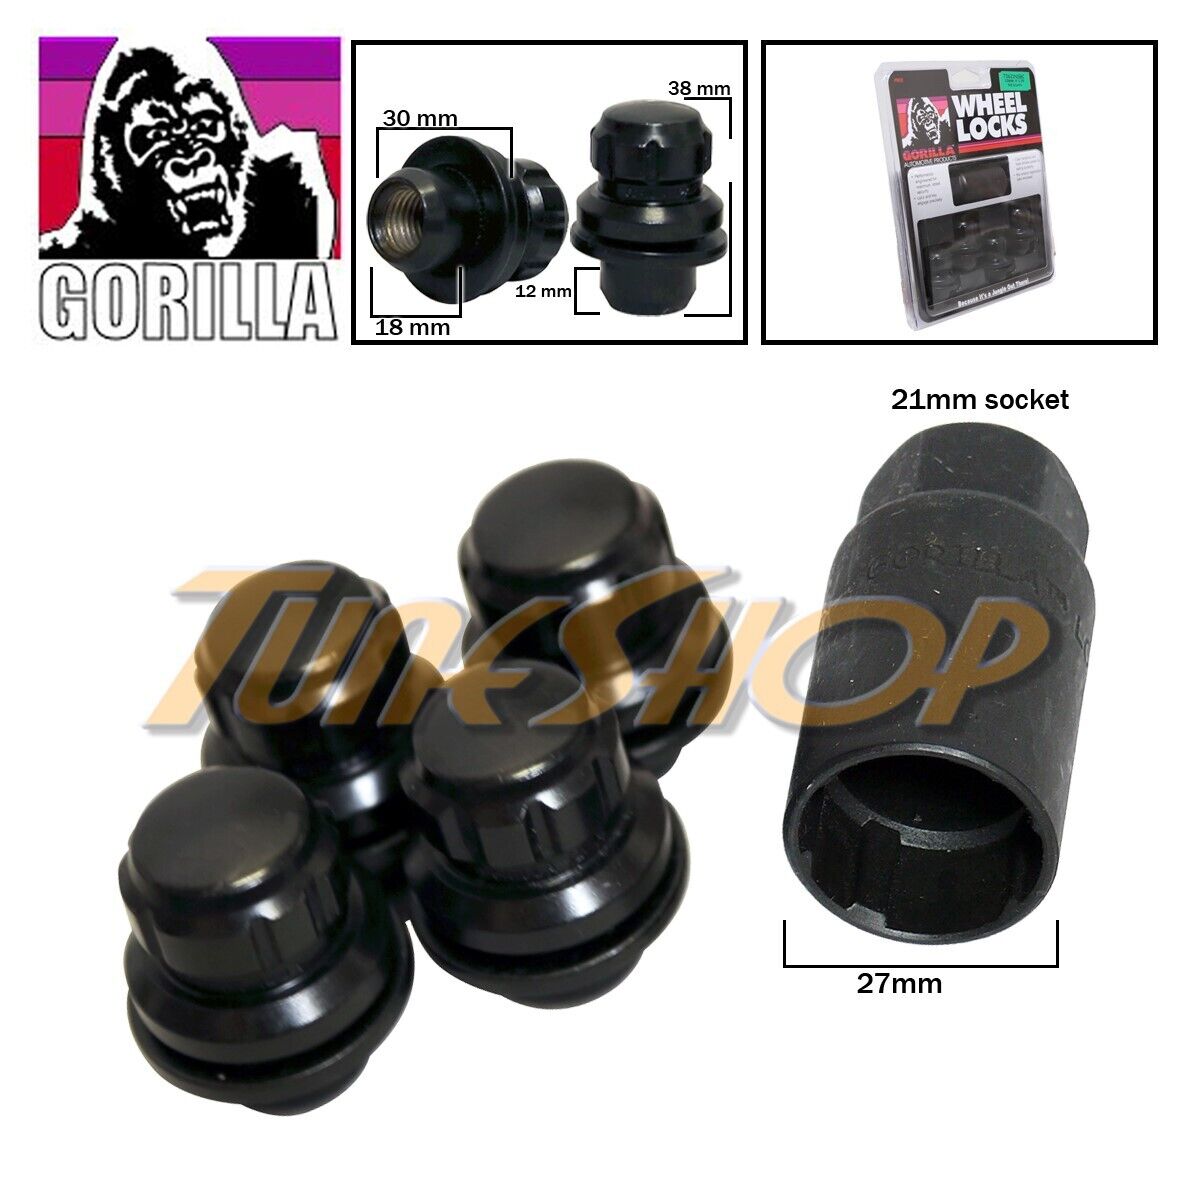 4 锁大猩猩为日产INFINITI 工厂车轮轮圈MAG 轮爪螺母12x1.25 黑色| eBay